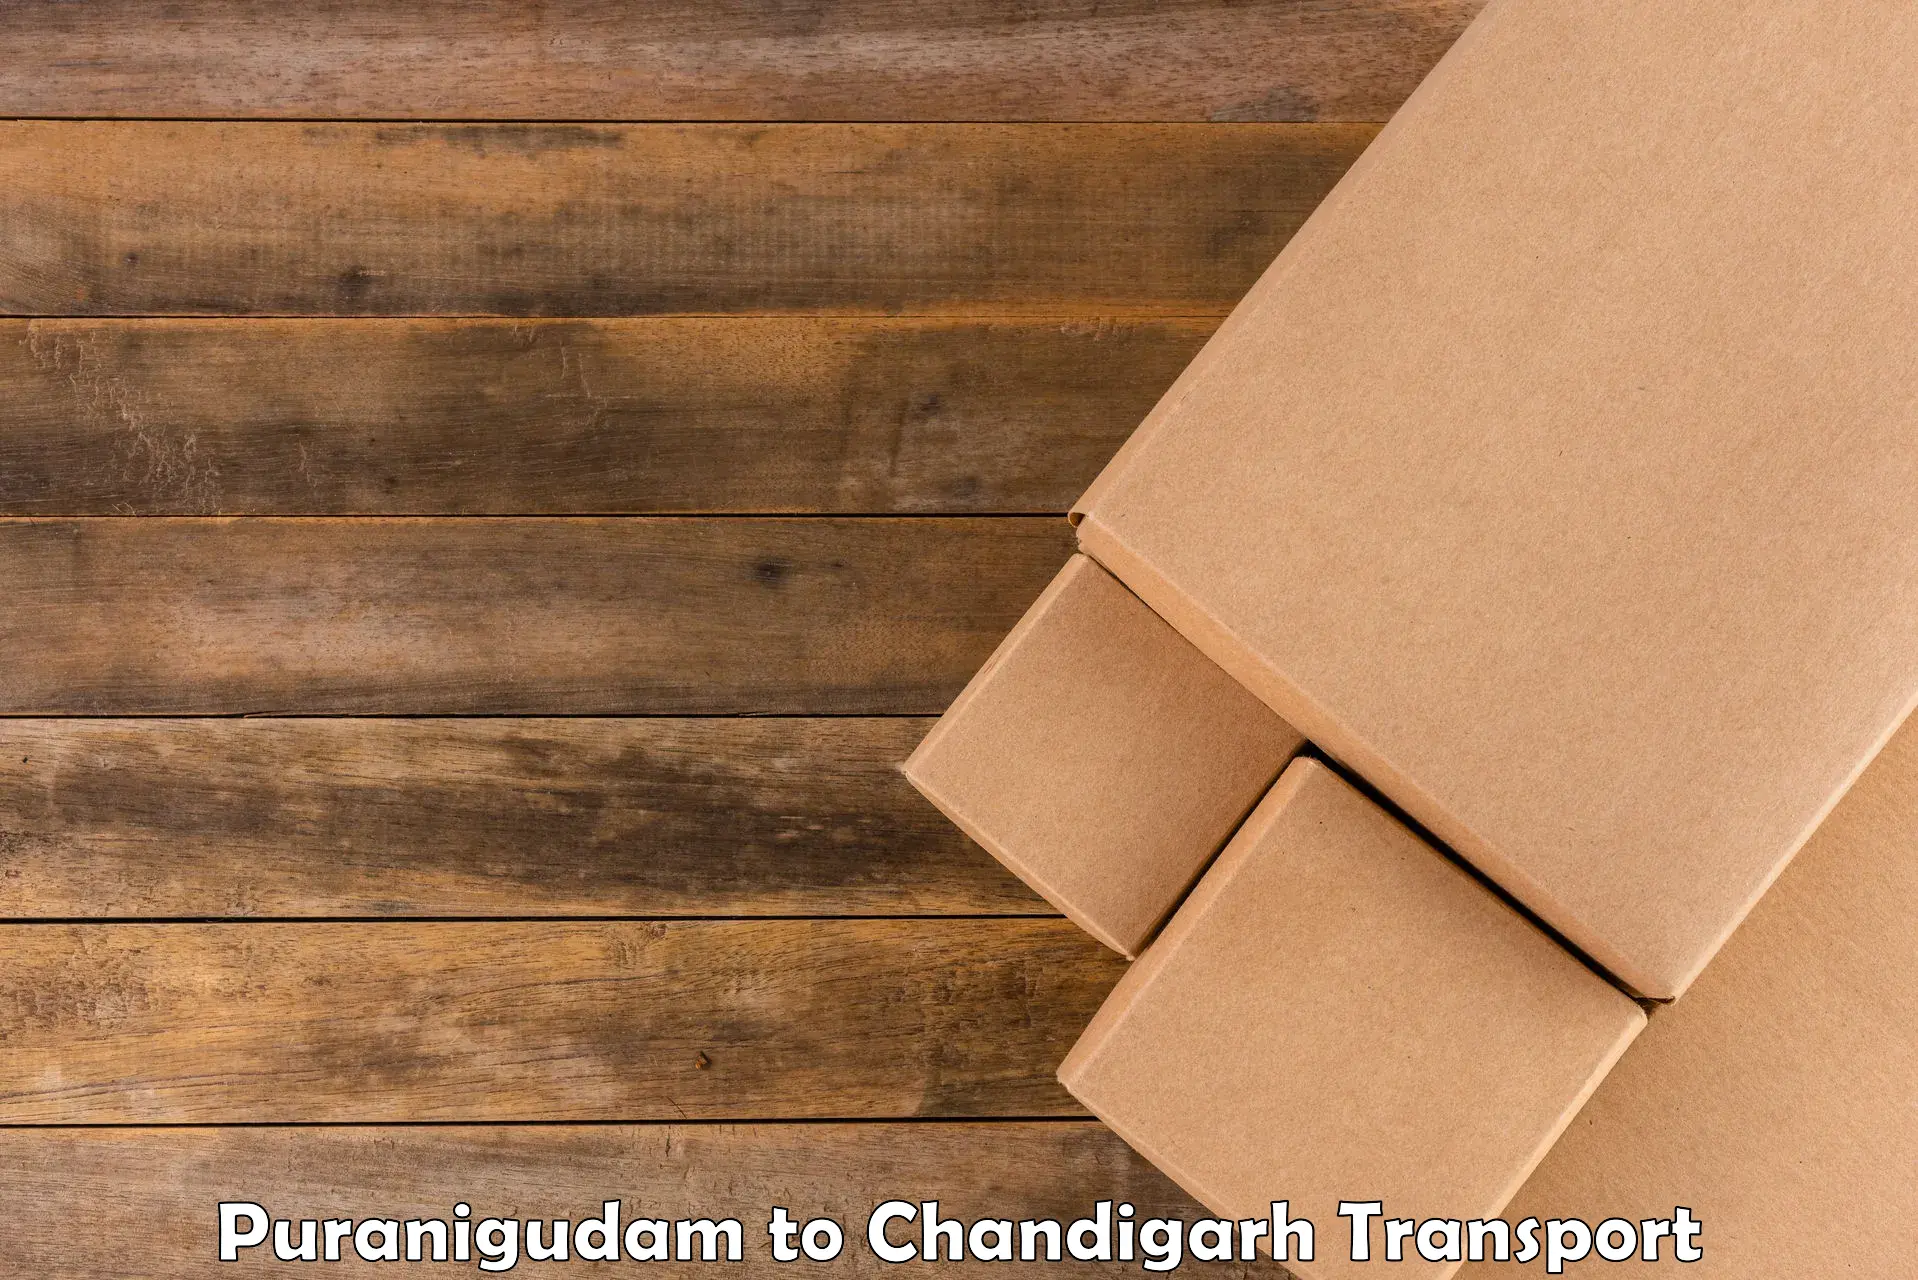 Shipping services in Puranigudam to Chandigarh